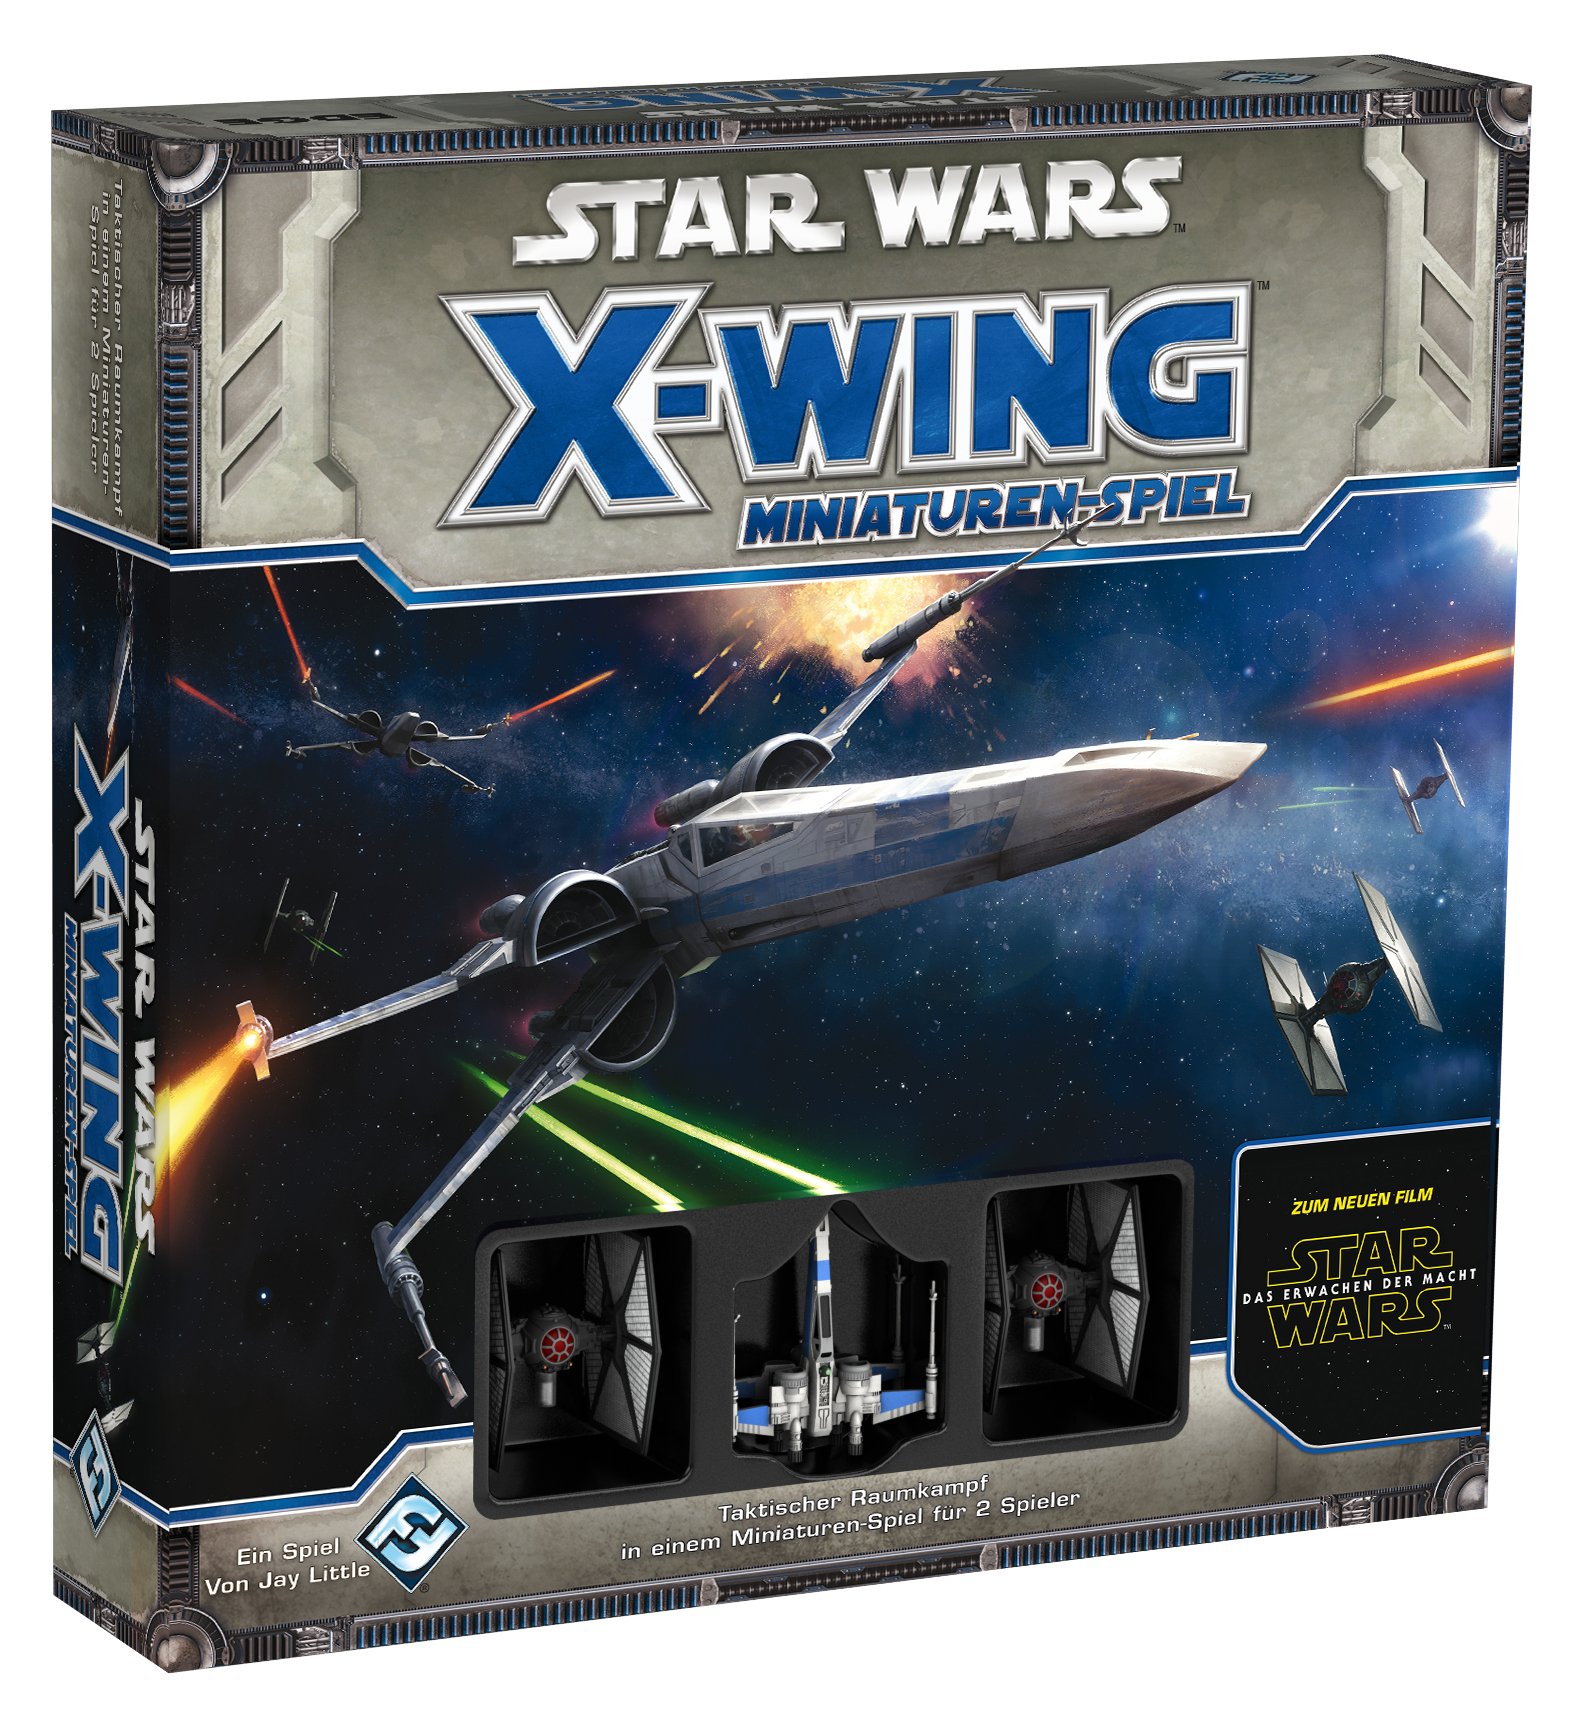 Asmodee HEI0450 - Star Wars X-Wing Das Erwachen der Macht, Grundspiel